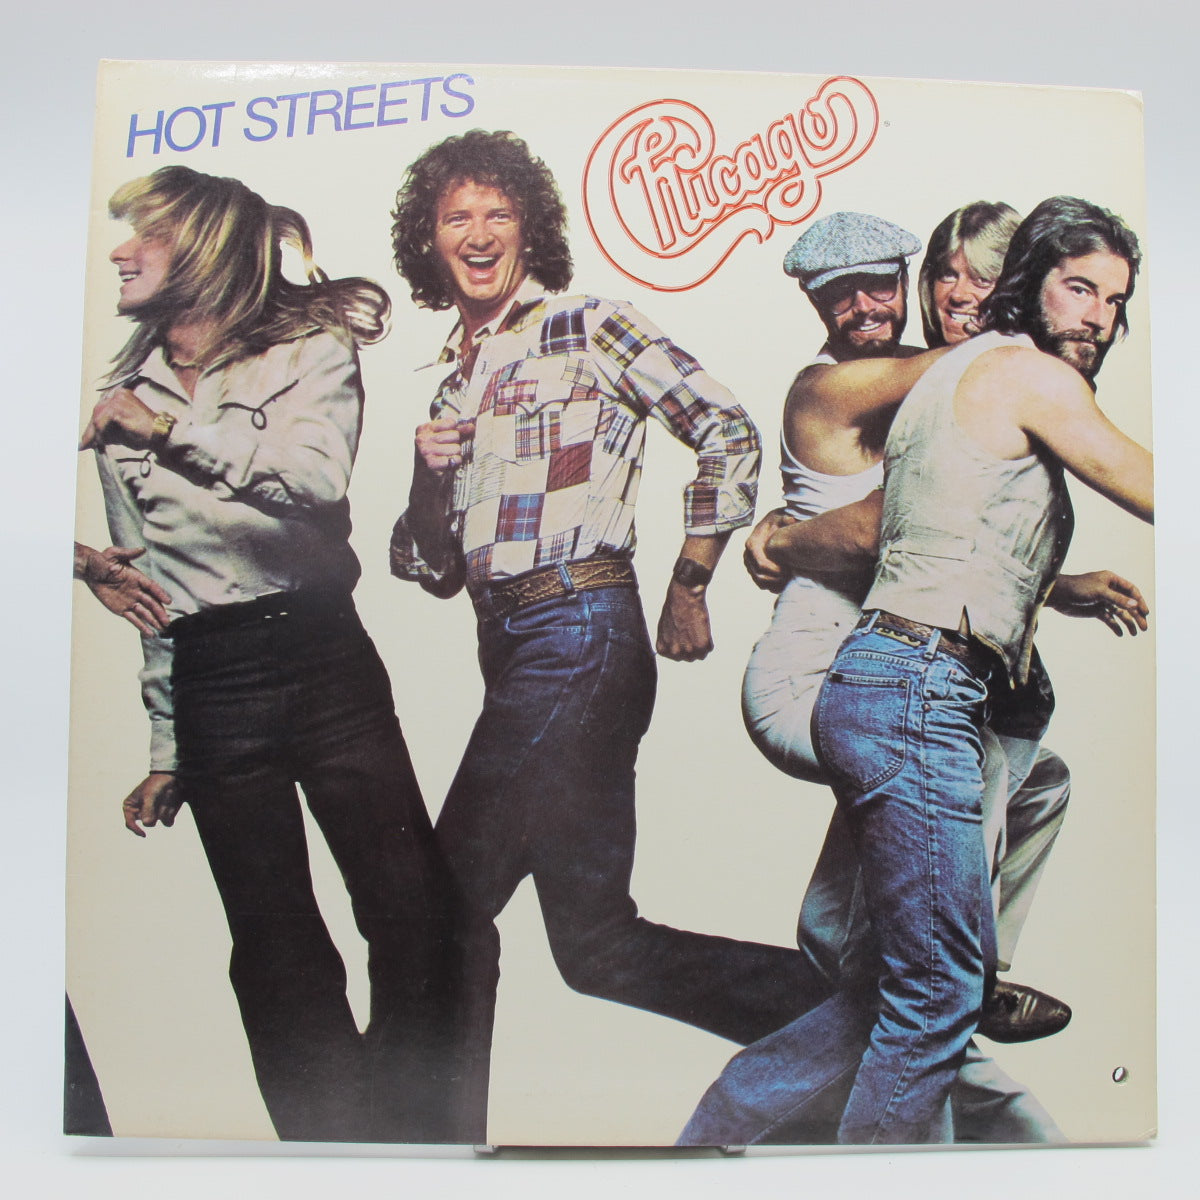 Chicago (2) - Hot Streets (Notuð plata VG)